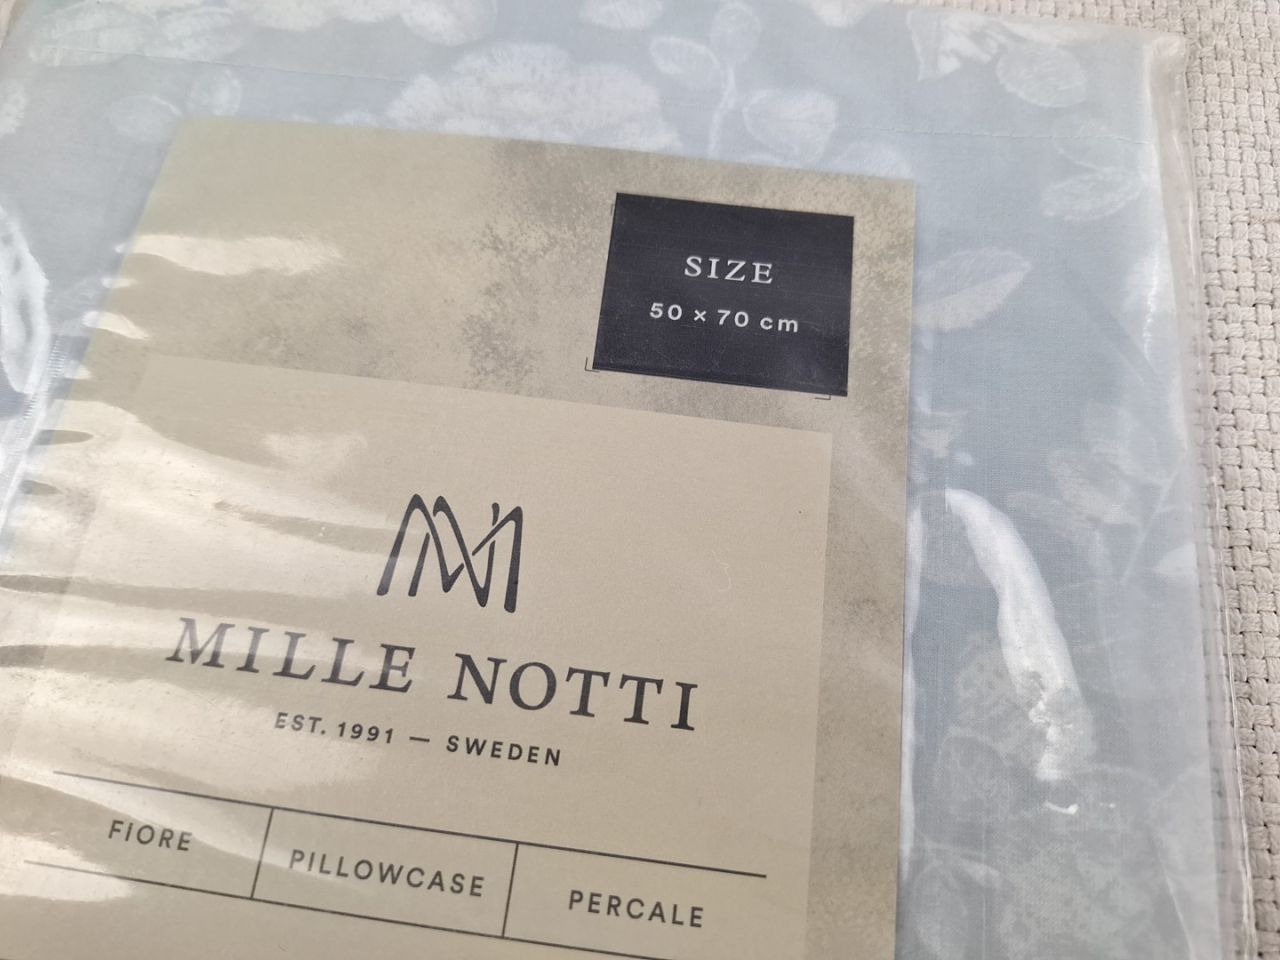 Povlak na polštář Mille Notti vel. 50 - 70 cm